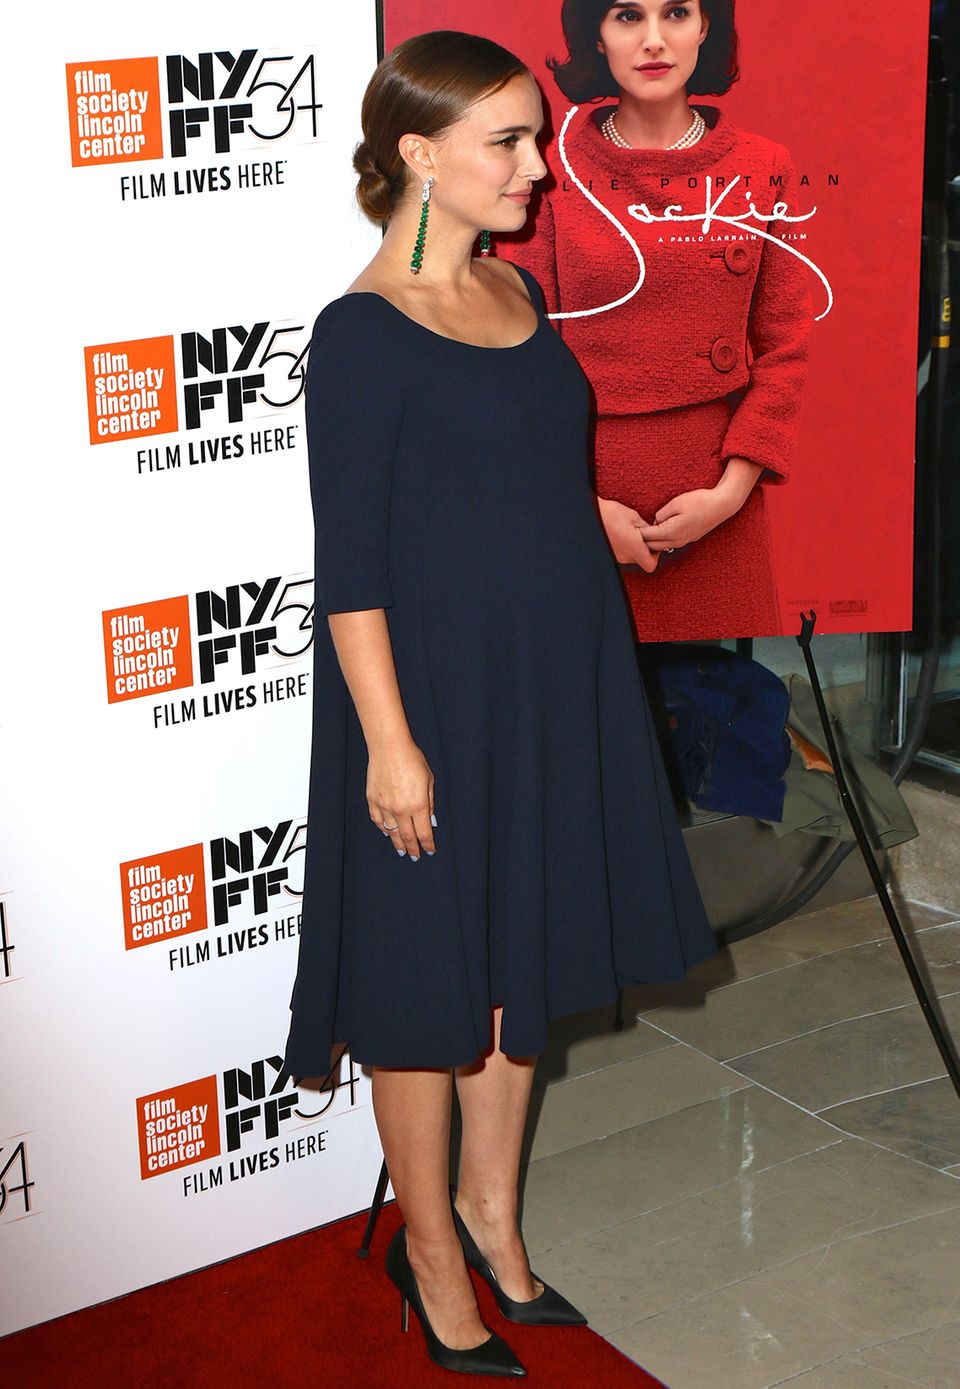 Schlicht und schön: Beim New Yorker Filmfestival Mitte Oktober zeigt Natalie Portman im eleganten, dunkelblauen Kleid, wie schnell ihr Babybauch schon gewachsen ist.